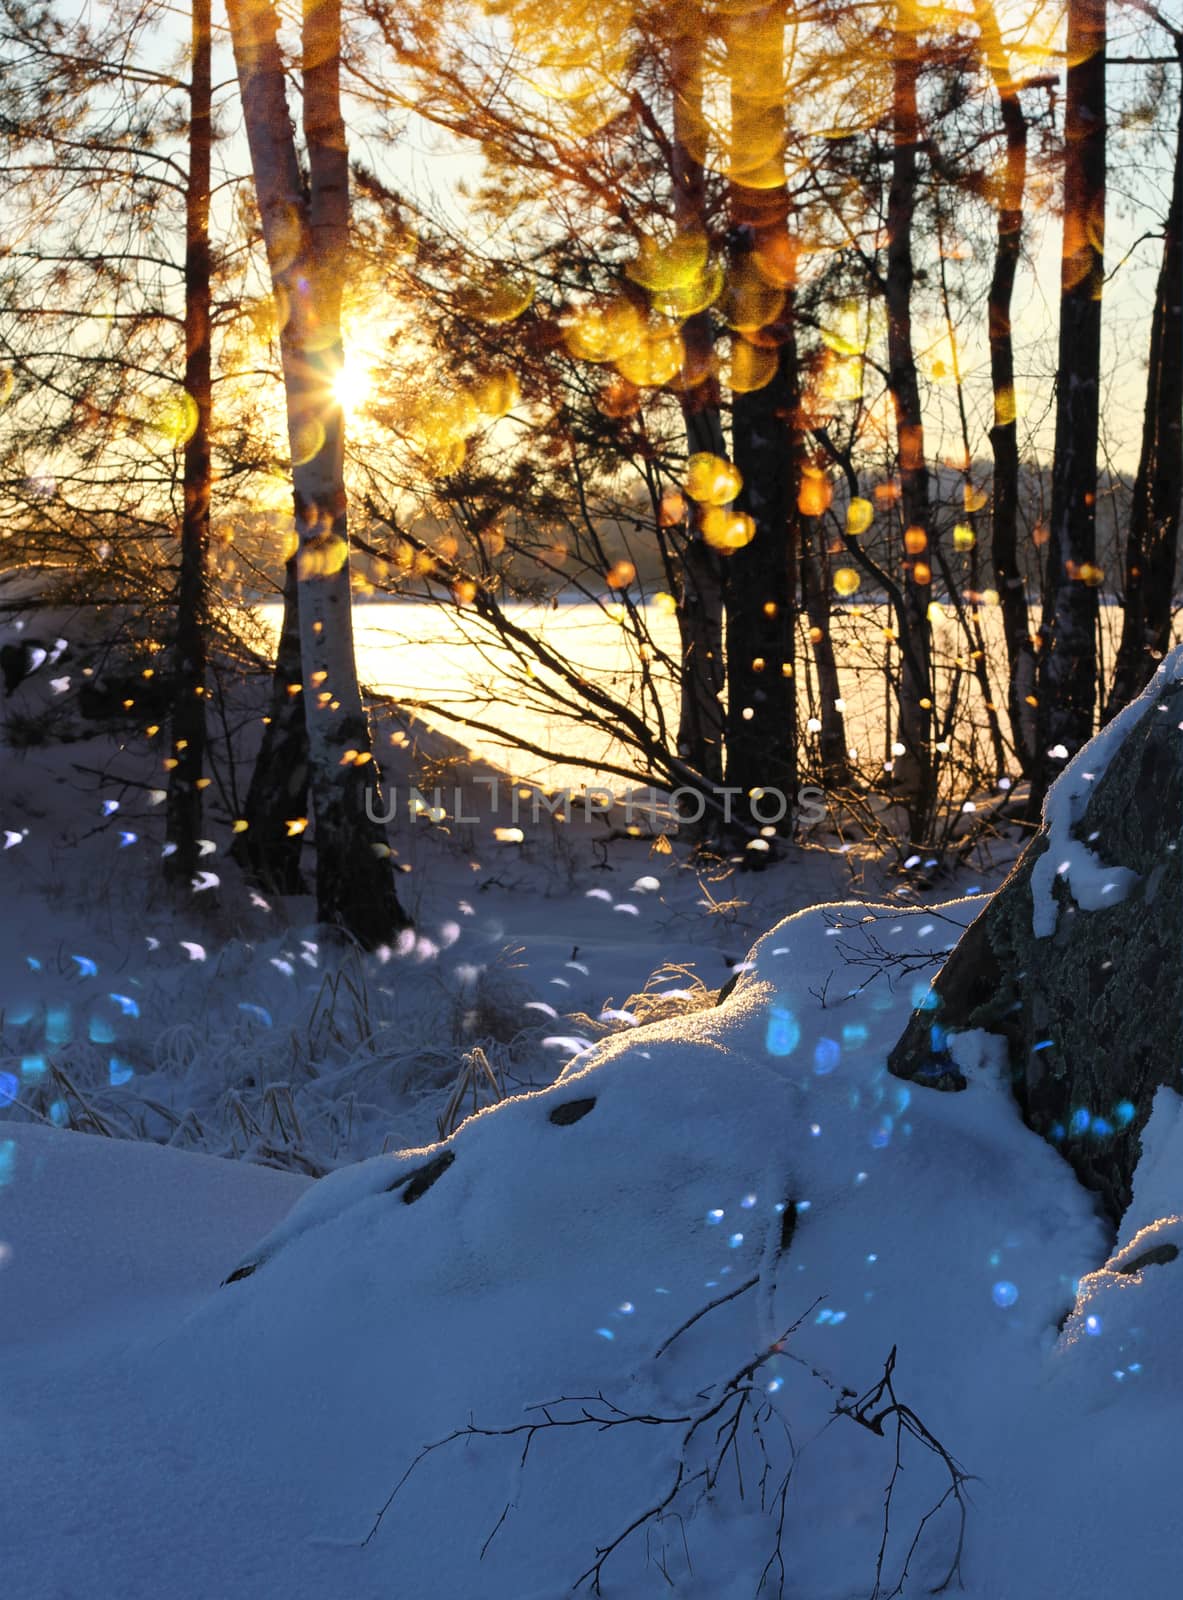 Winter sunset snowfall glitter lakeshore by anterovium